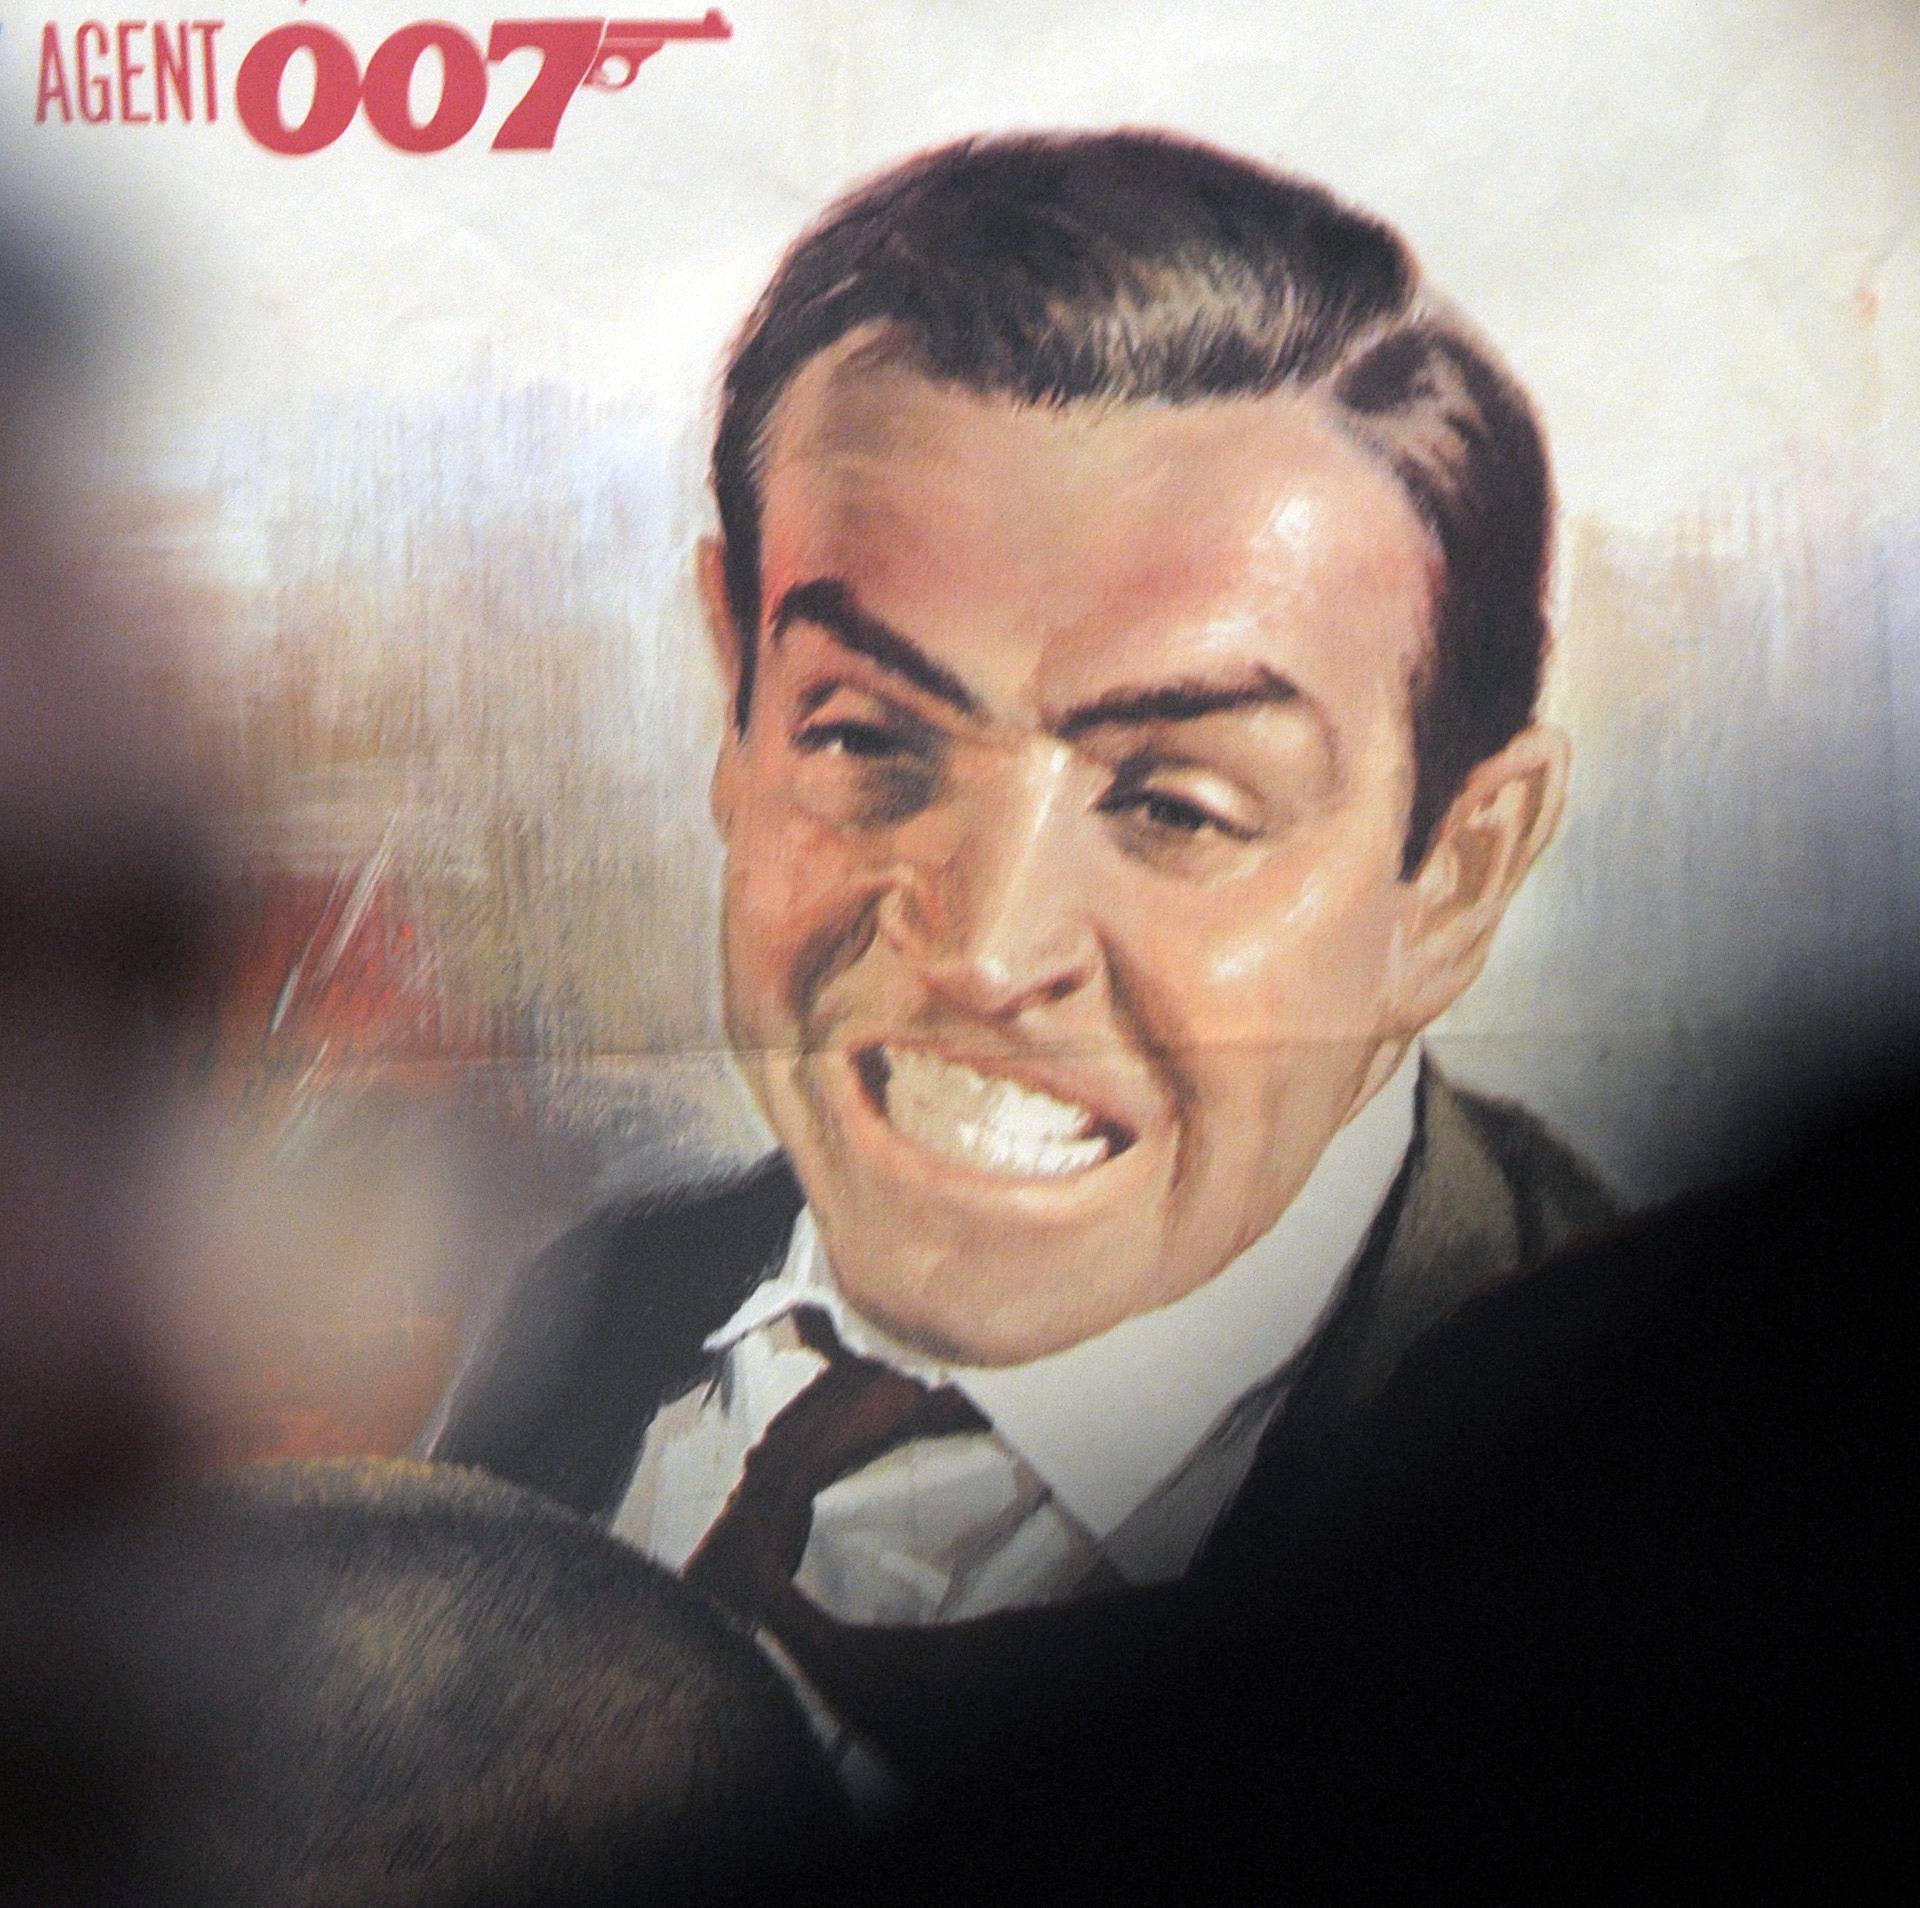 James Bond exhibition in Essen